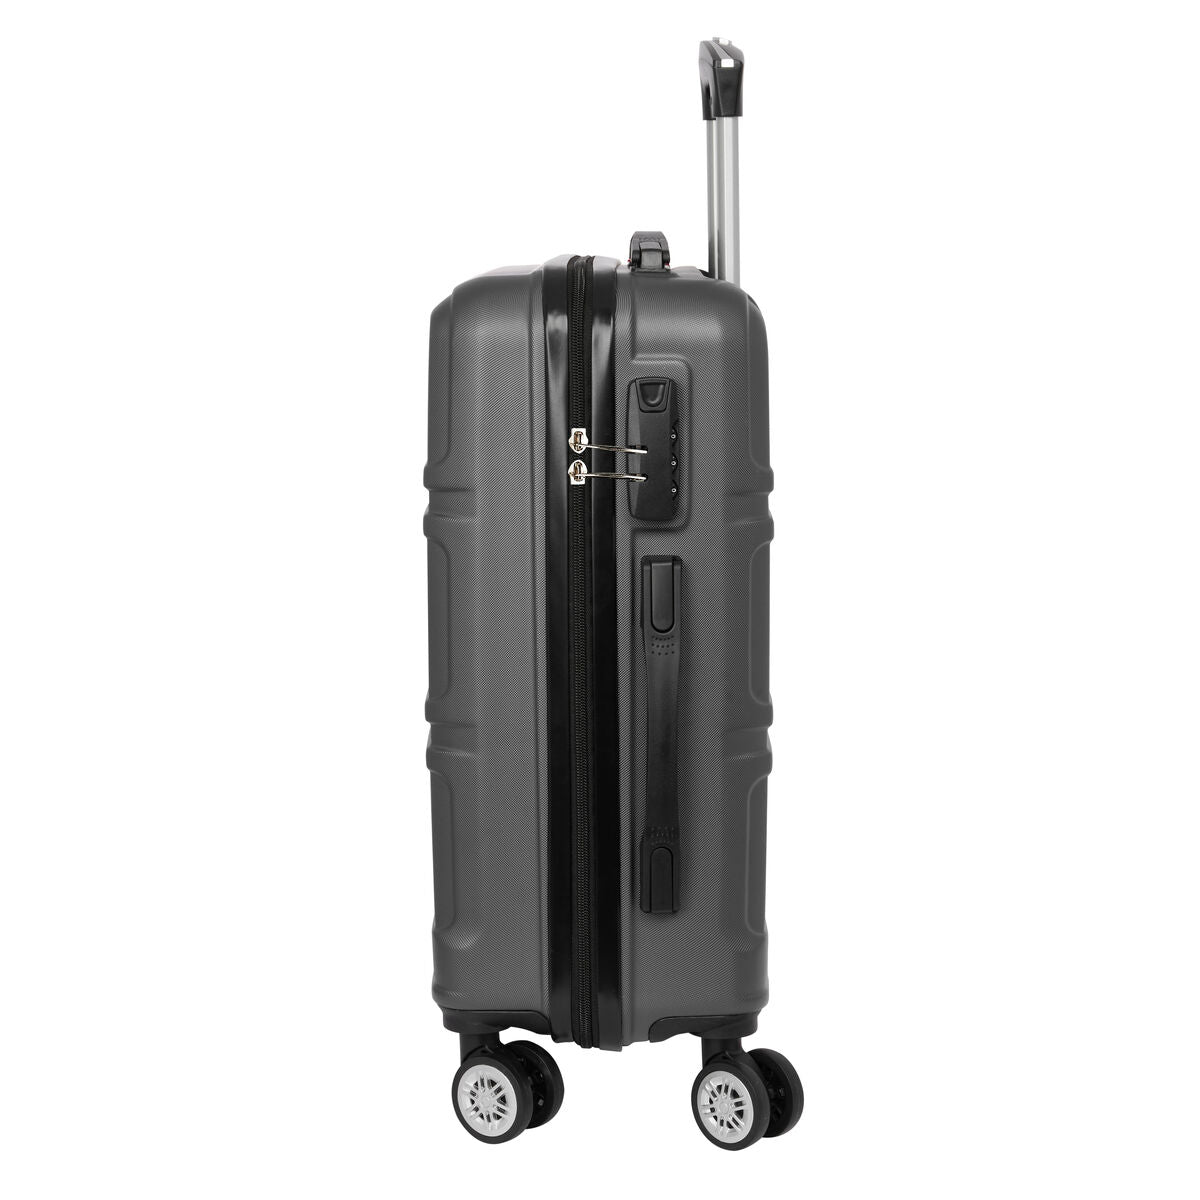 Kaufe Koffer für die Kabine Safta Dunkelgrau 20'' 34,5 x 55 x 20 cm bei AWK Flagship um € 66.00